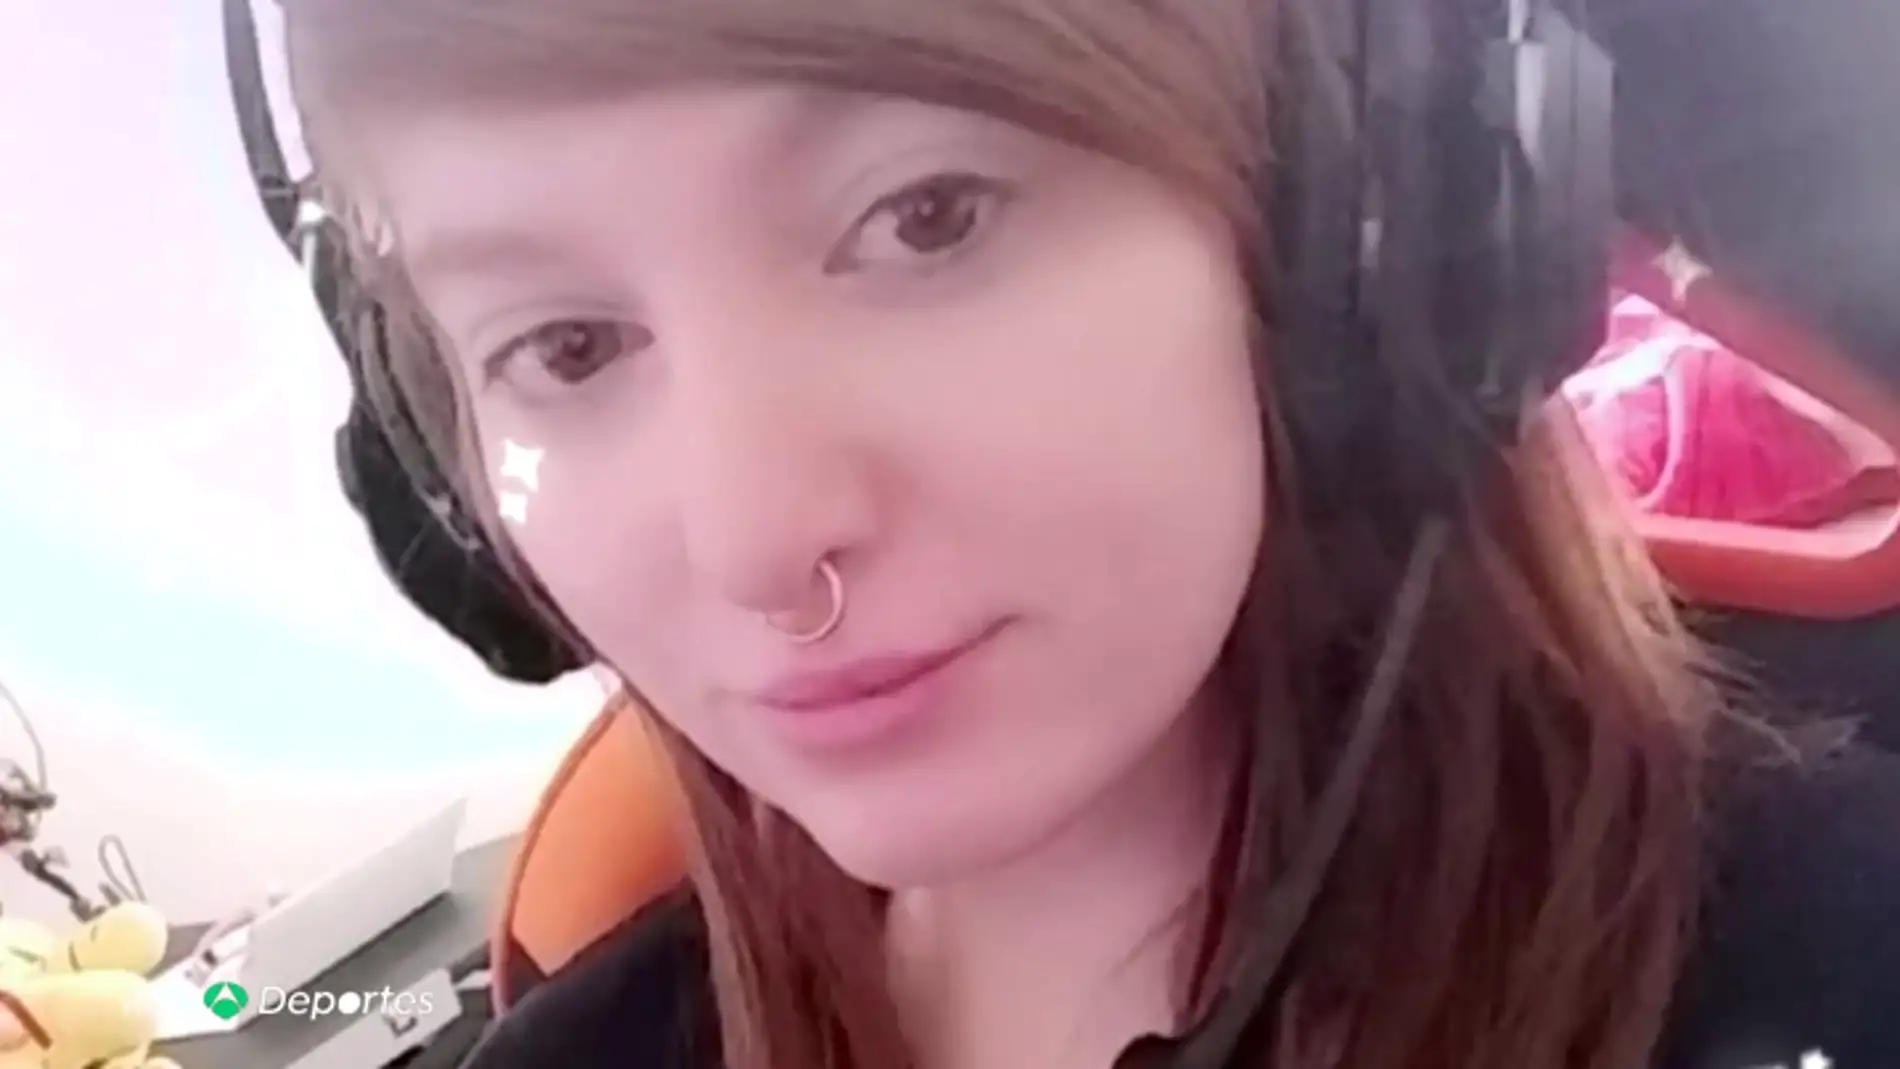 Muere en extrañas circunstancias la 'gamer' transgenero de 24 años 'Remilia'